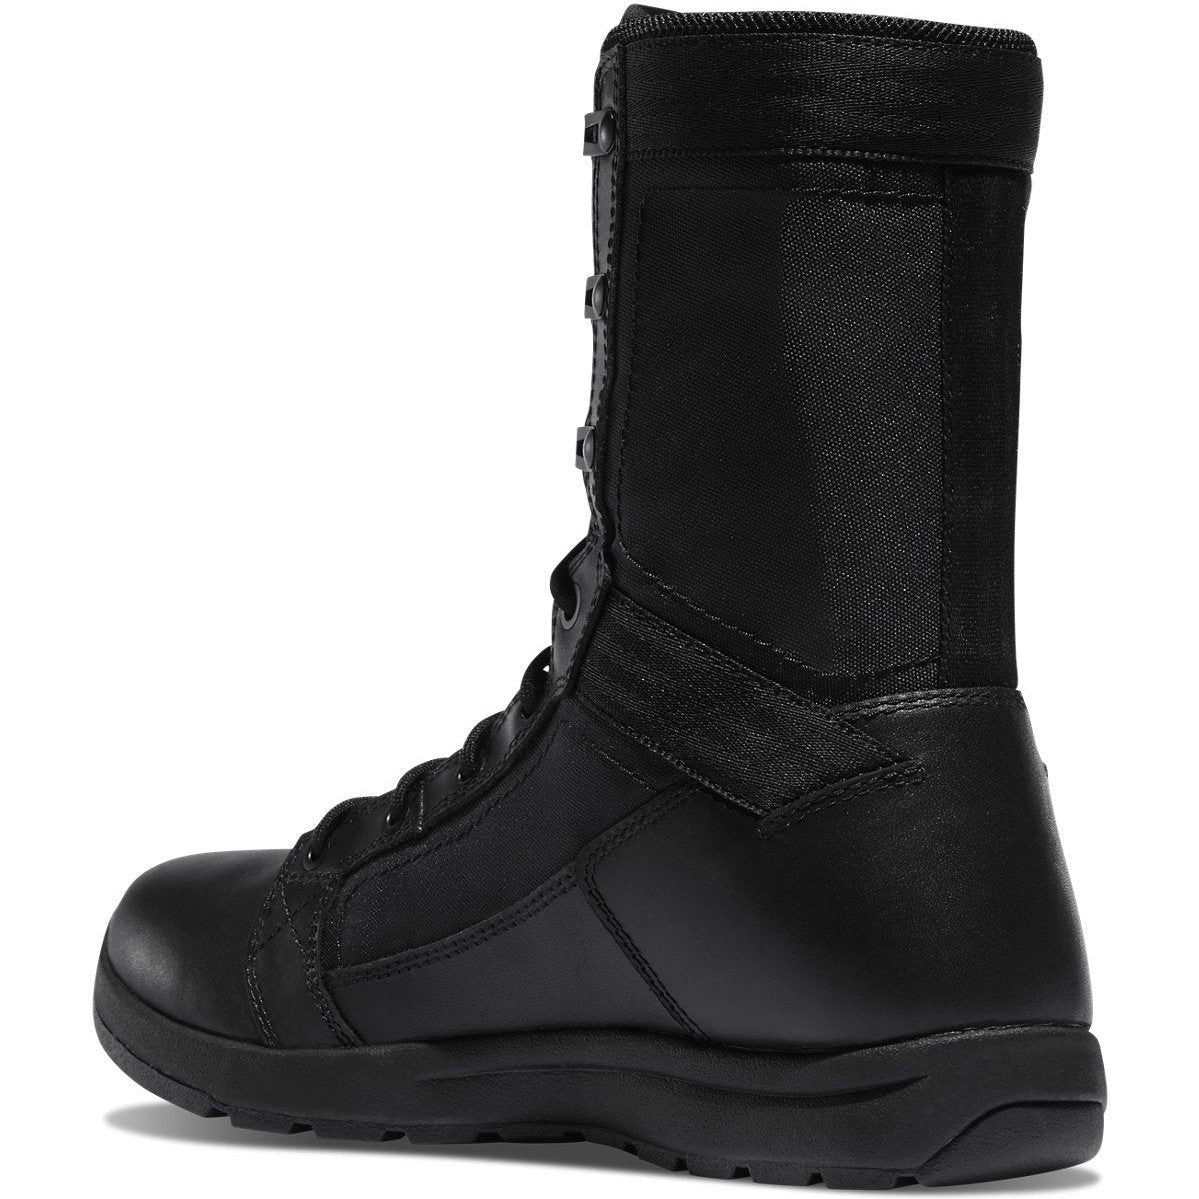 Danner Men's Tachyon 8" Duty Boot -Black- 50124  - Overlook Boots